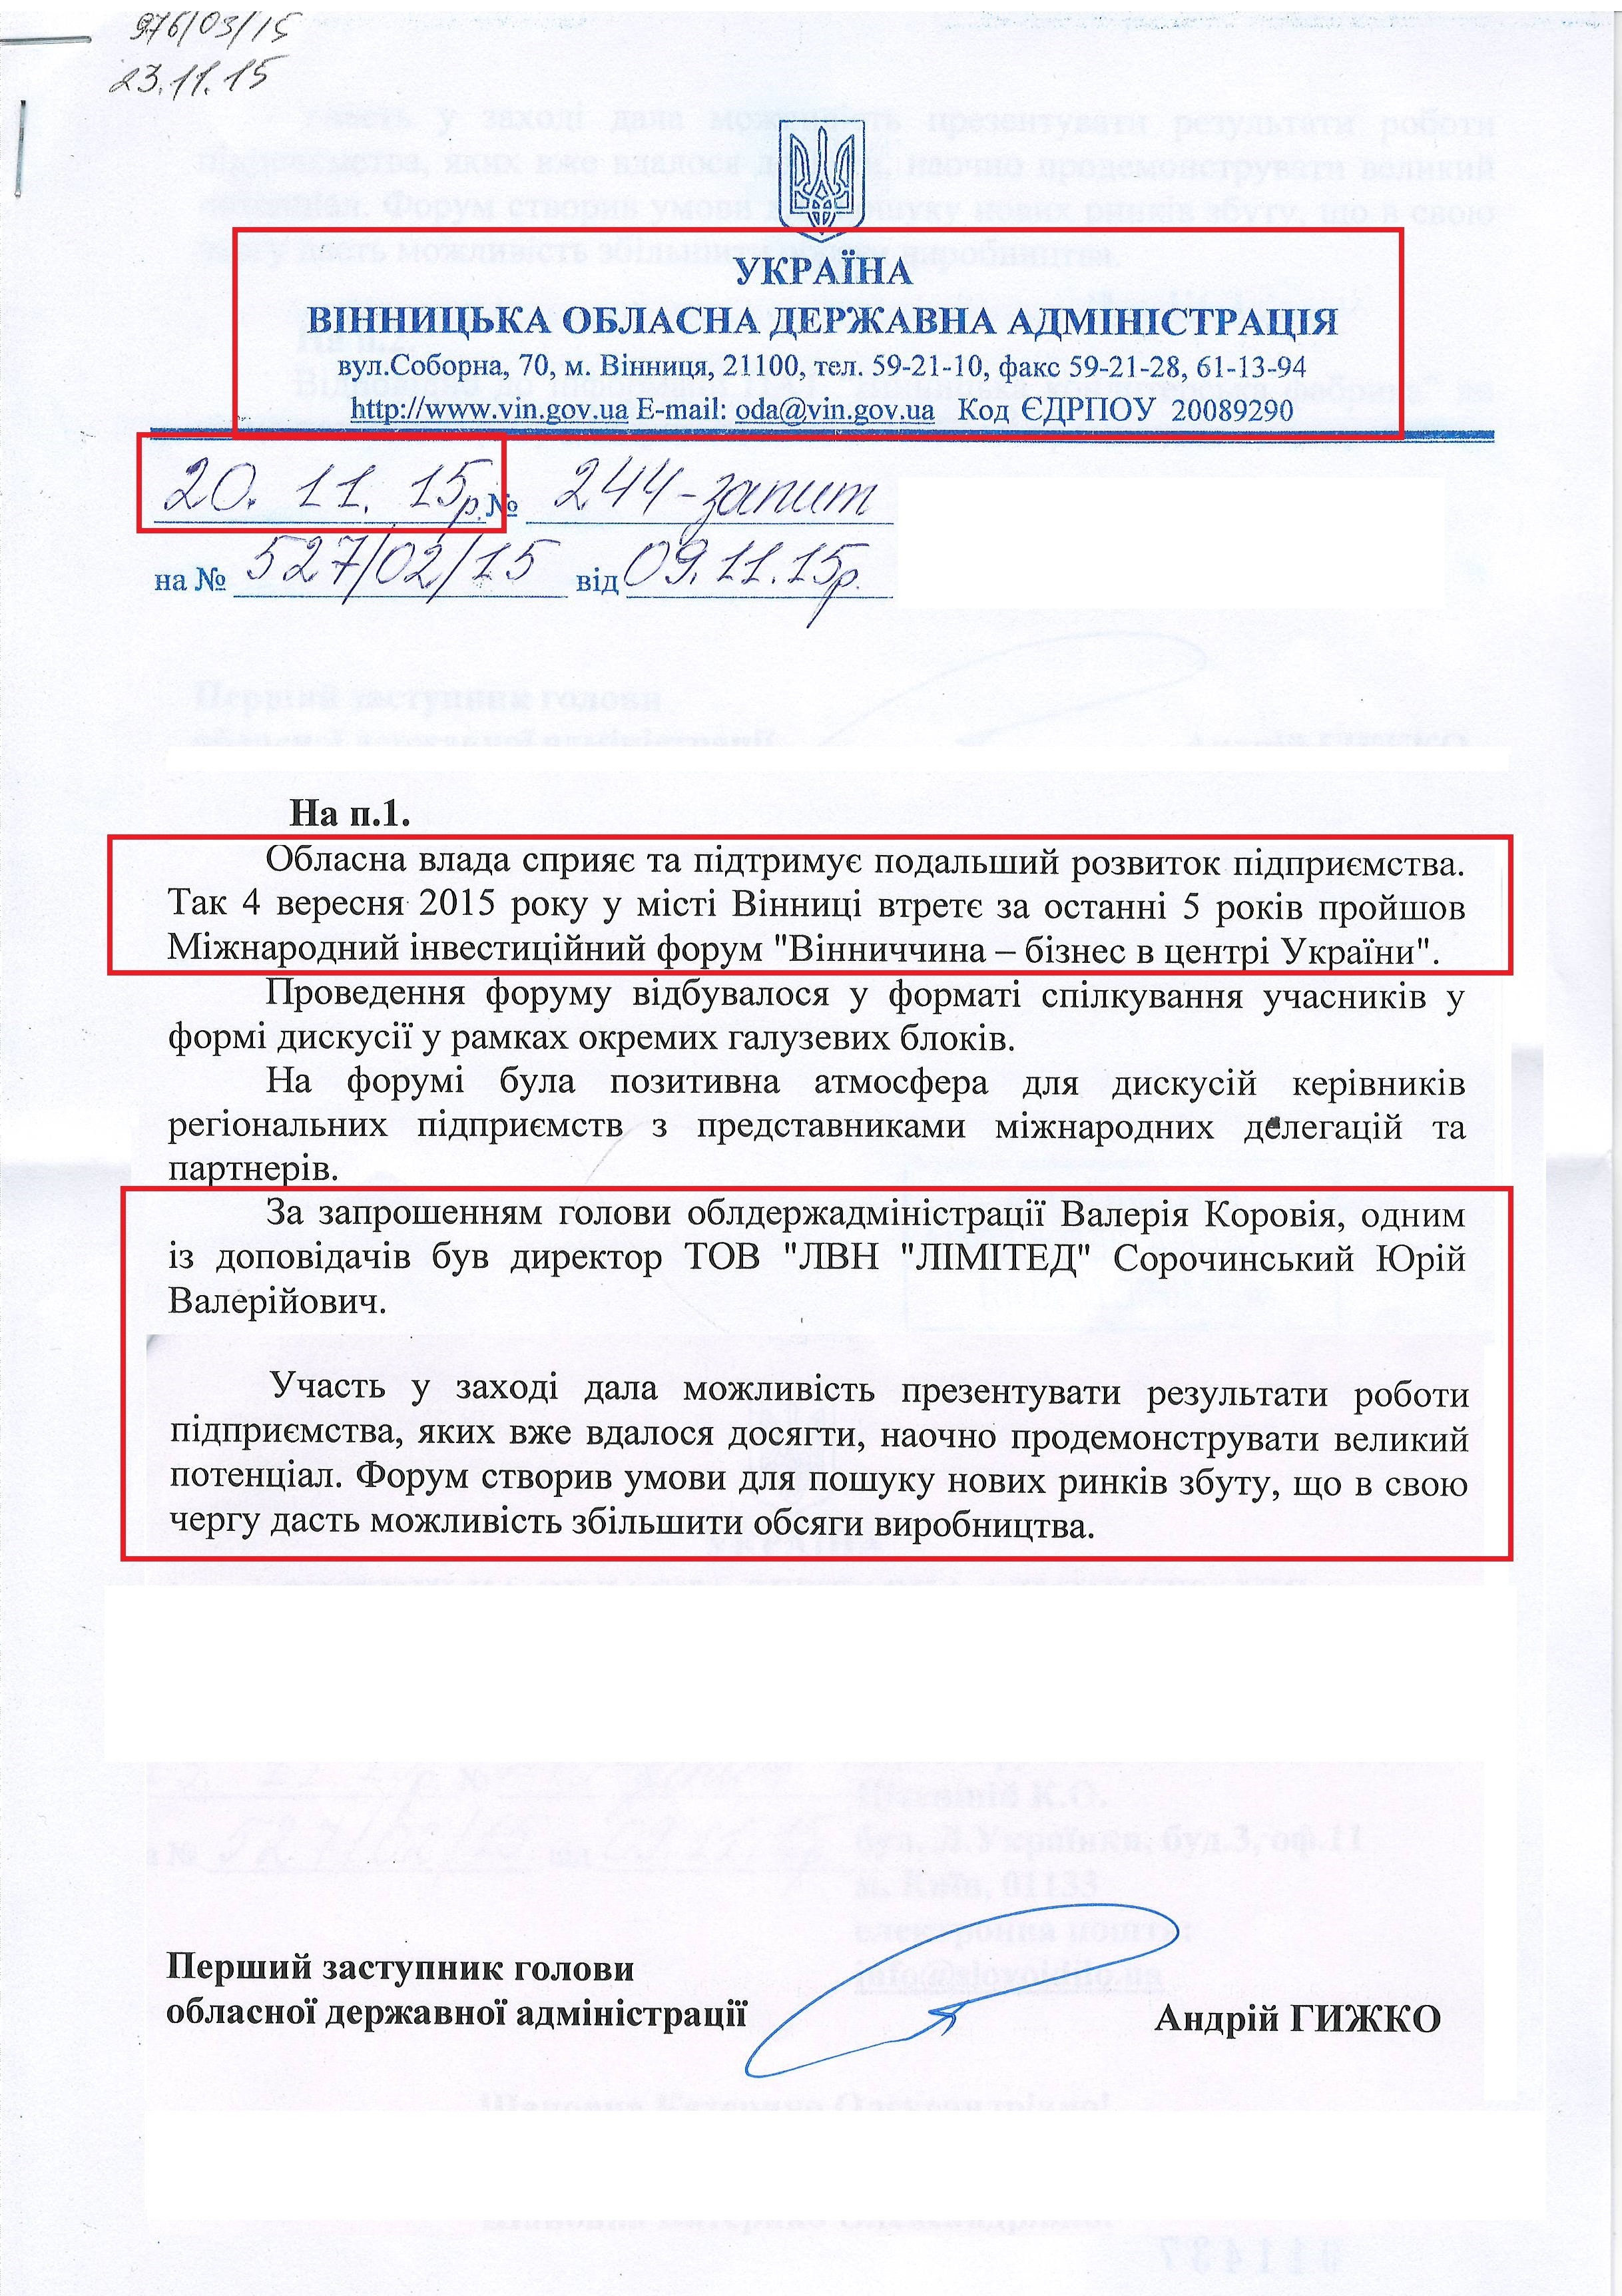 Лист першого заступника голови обласної державної адміністрації Андрія Гижко